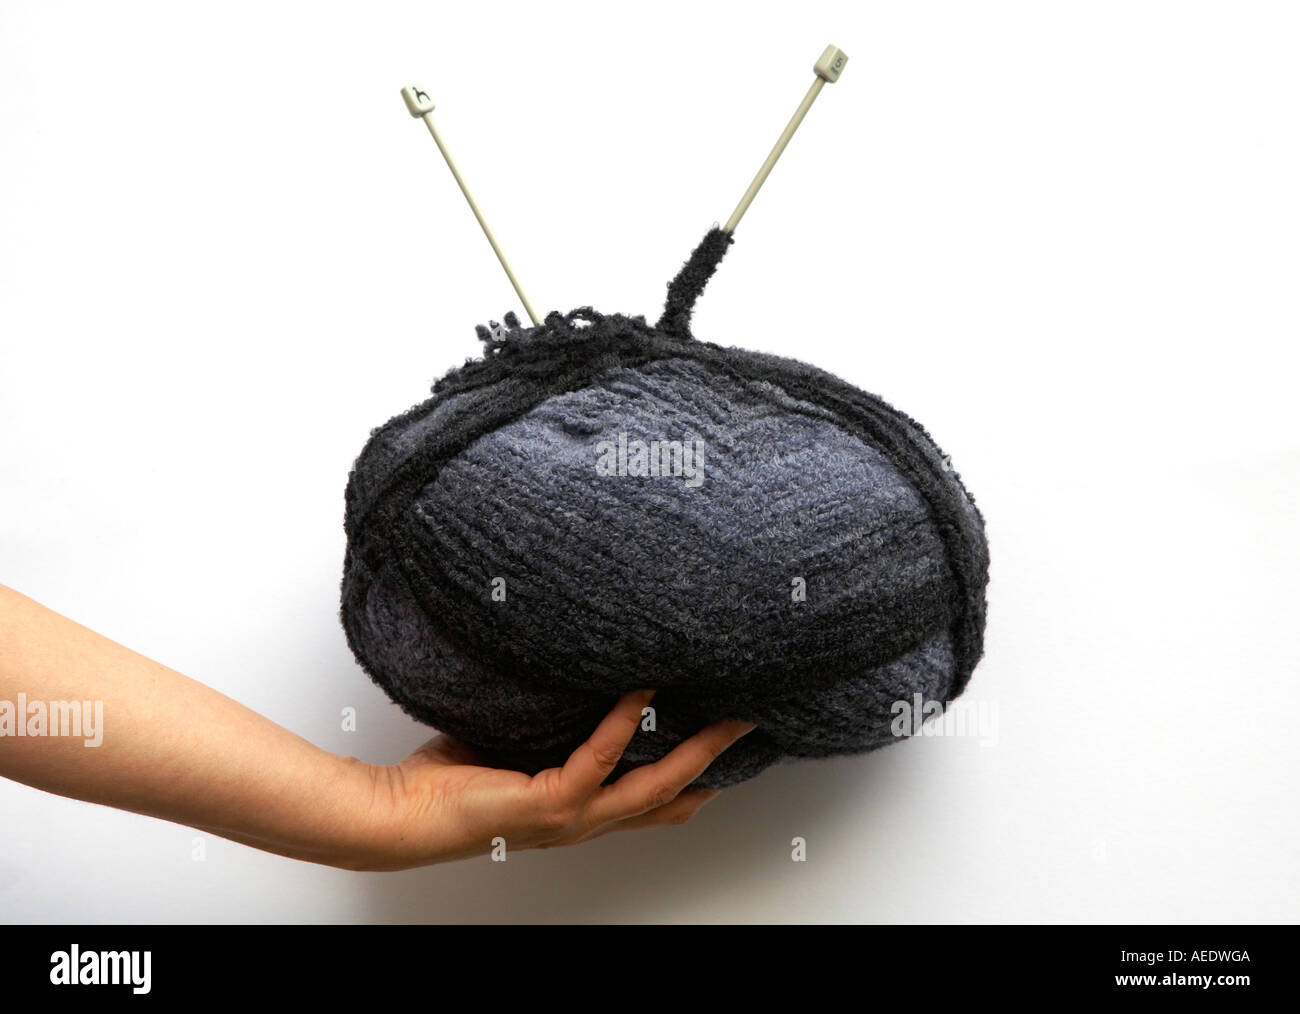 Gran Bola de lana con agujas de tejer Foto de stock